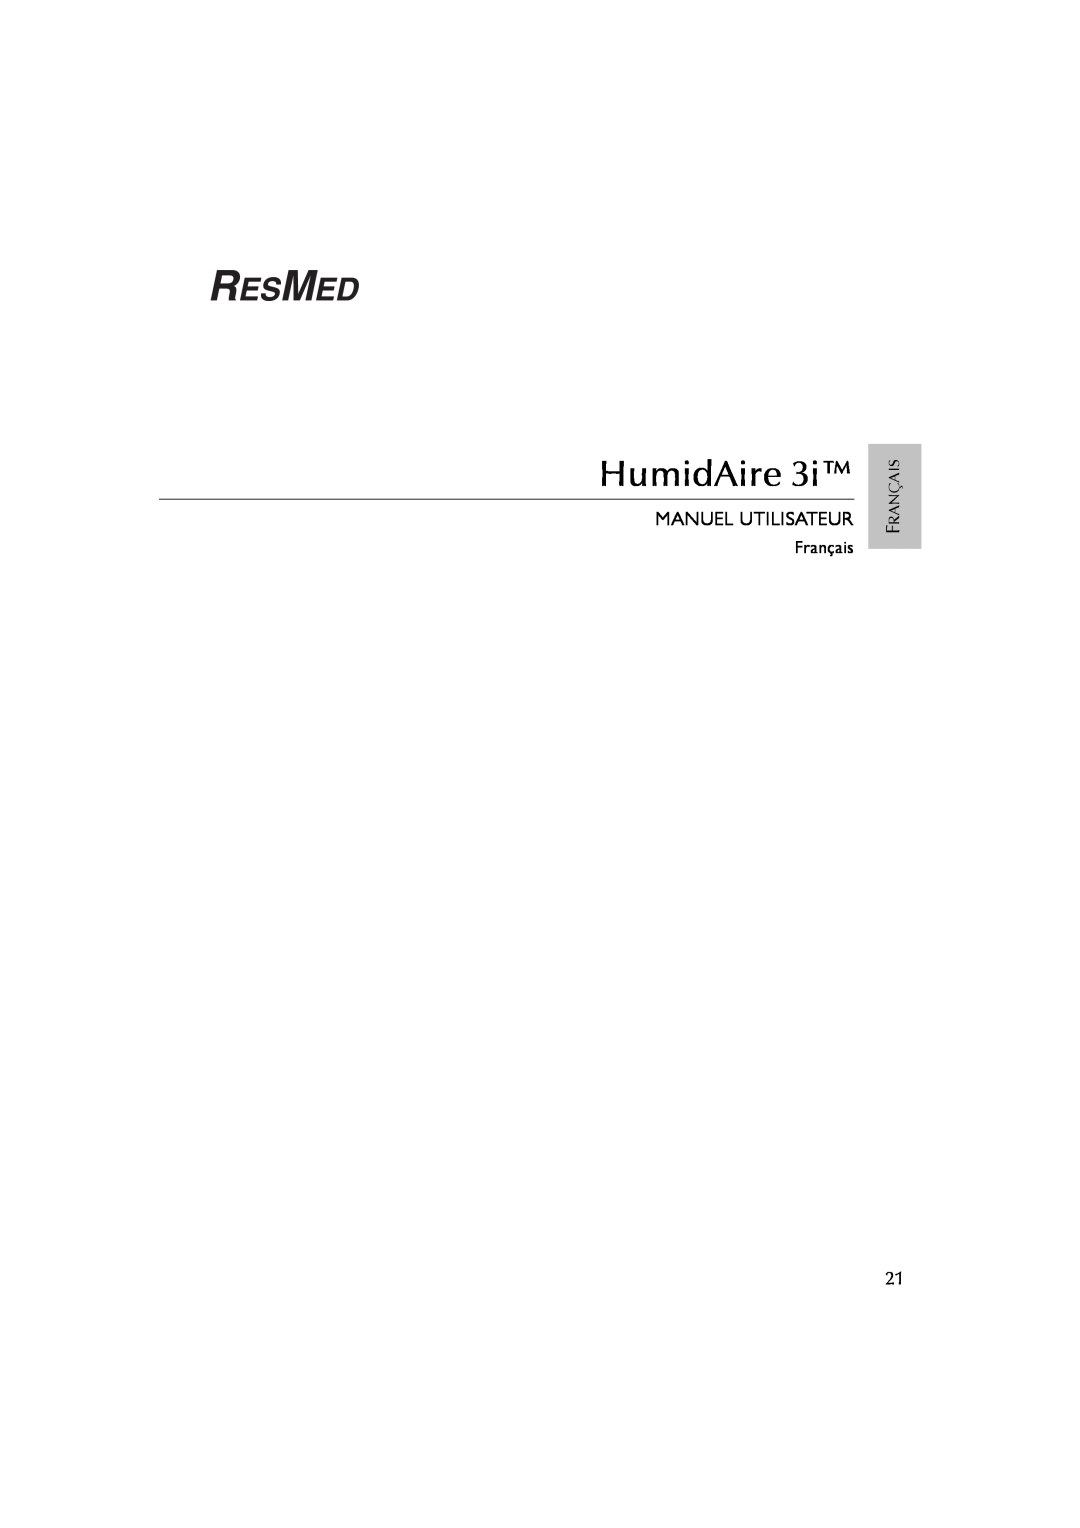 ResMed 3I user manual Manuel Utilisateur, HumidAire, Français 